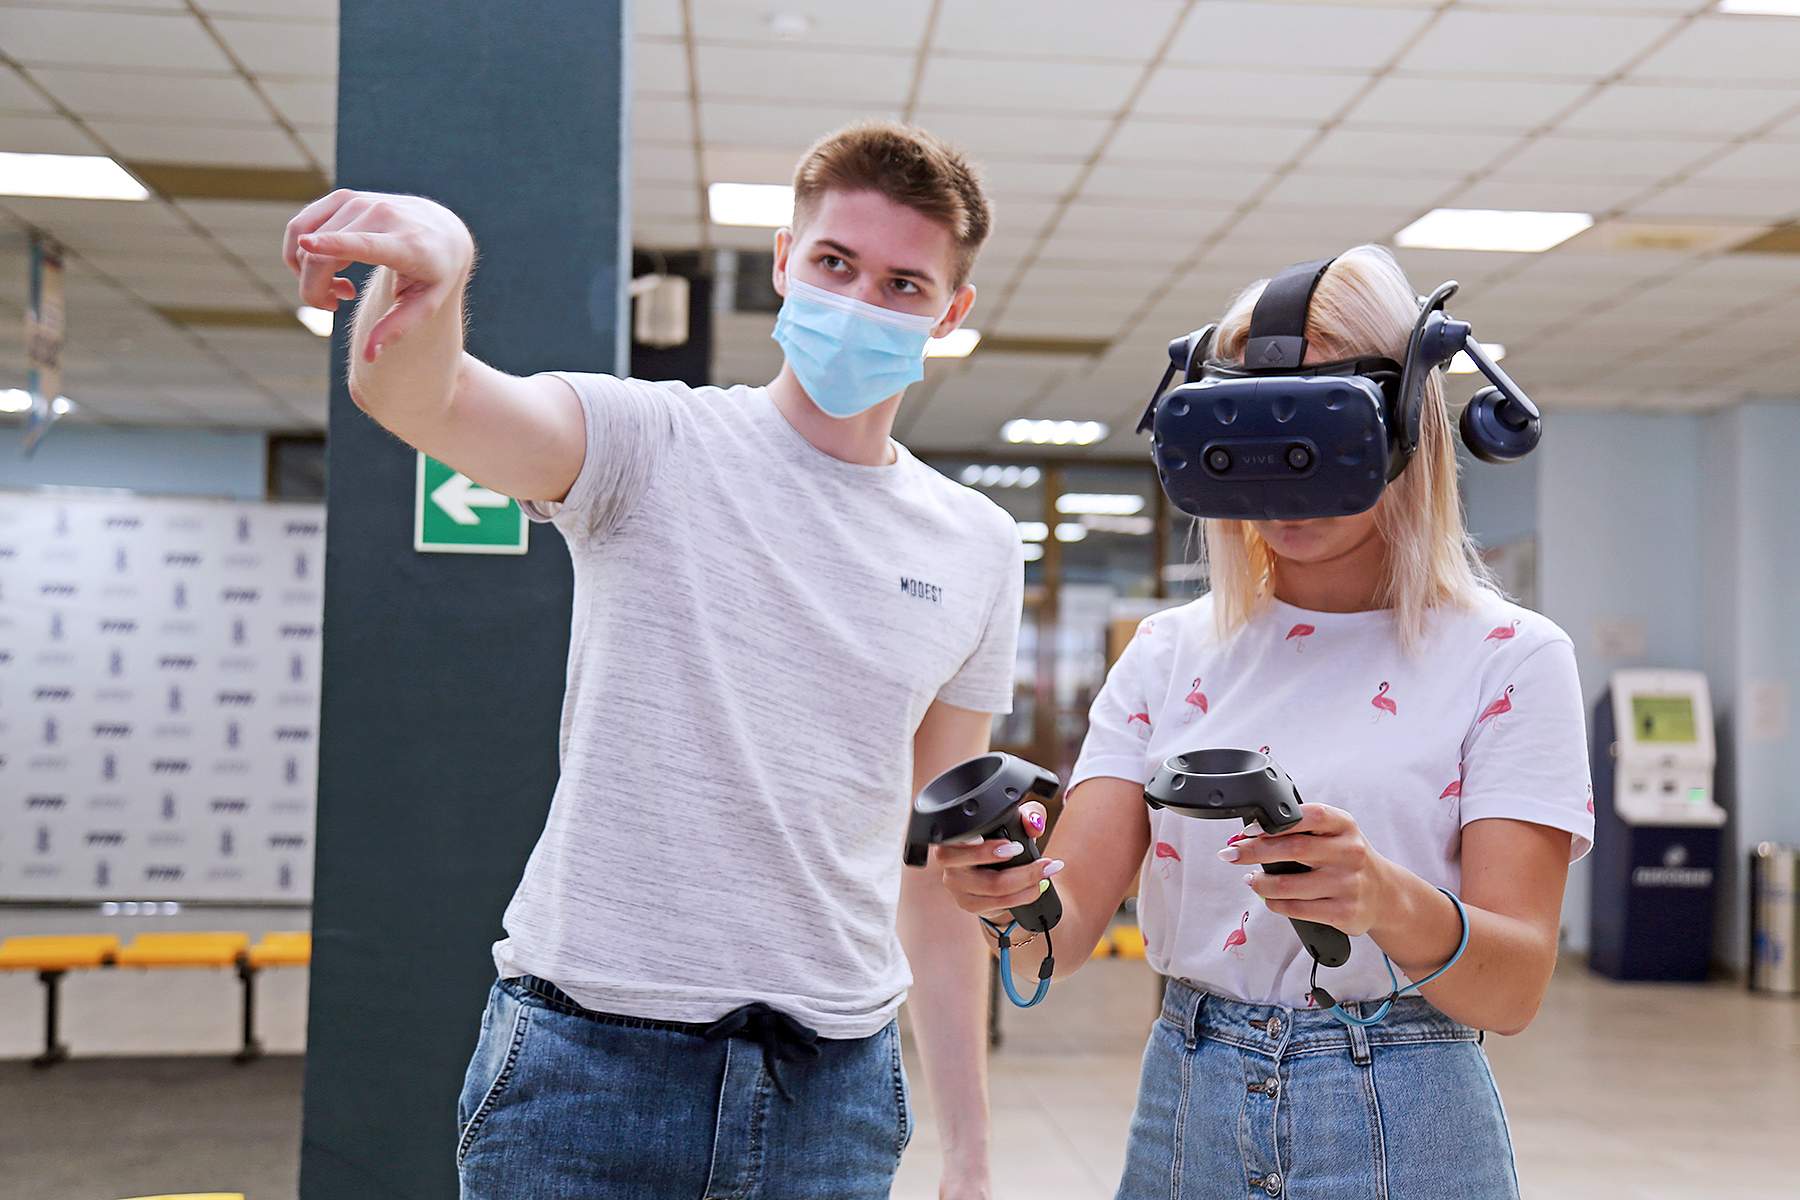 Прорыв в образовательных технологиях на Дальнем Востоке: во ВГУЭС протестировали первый VR-тренажер